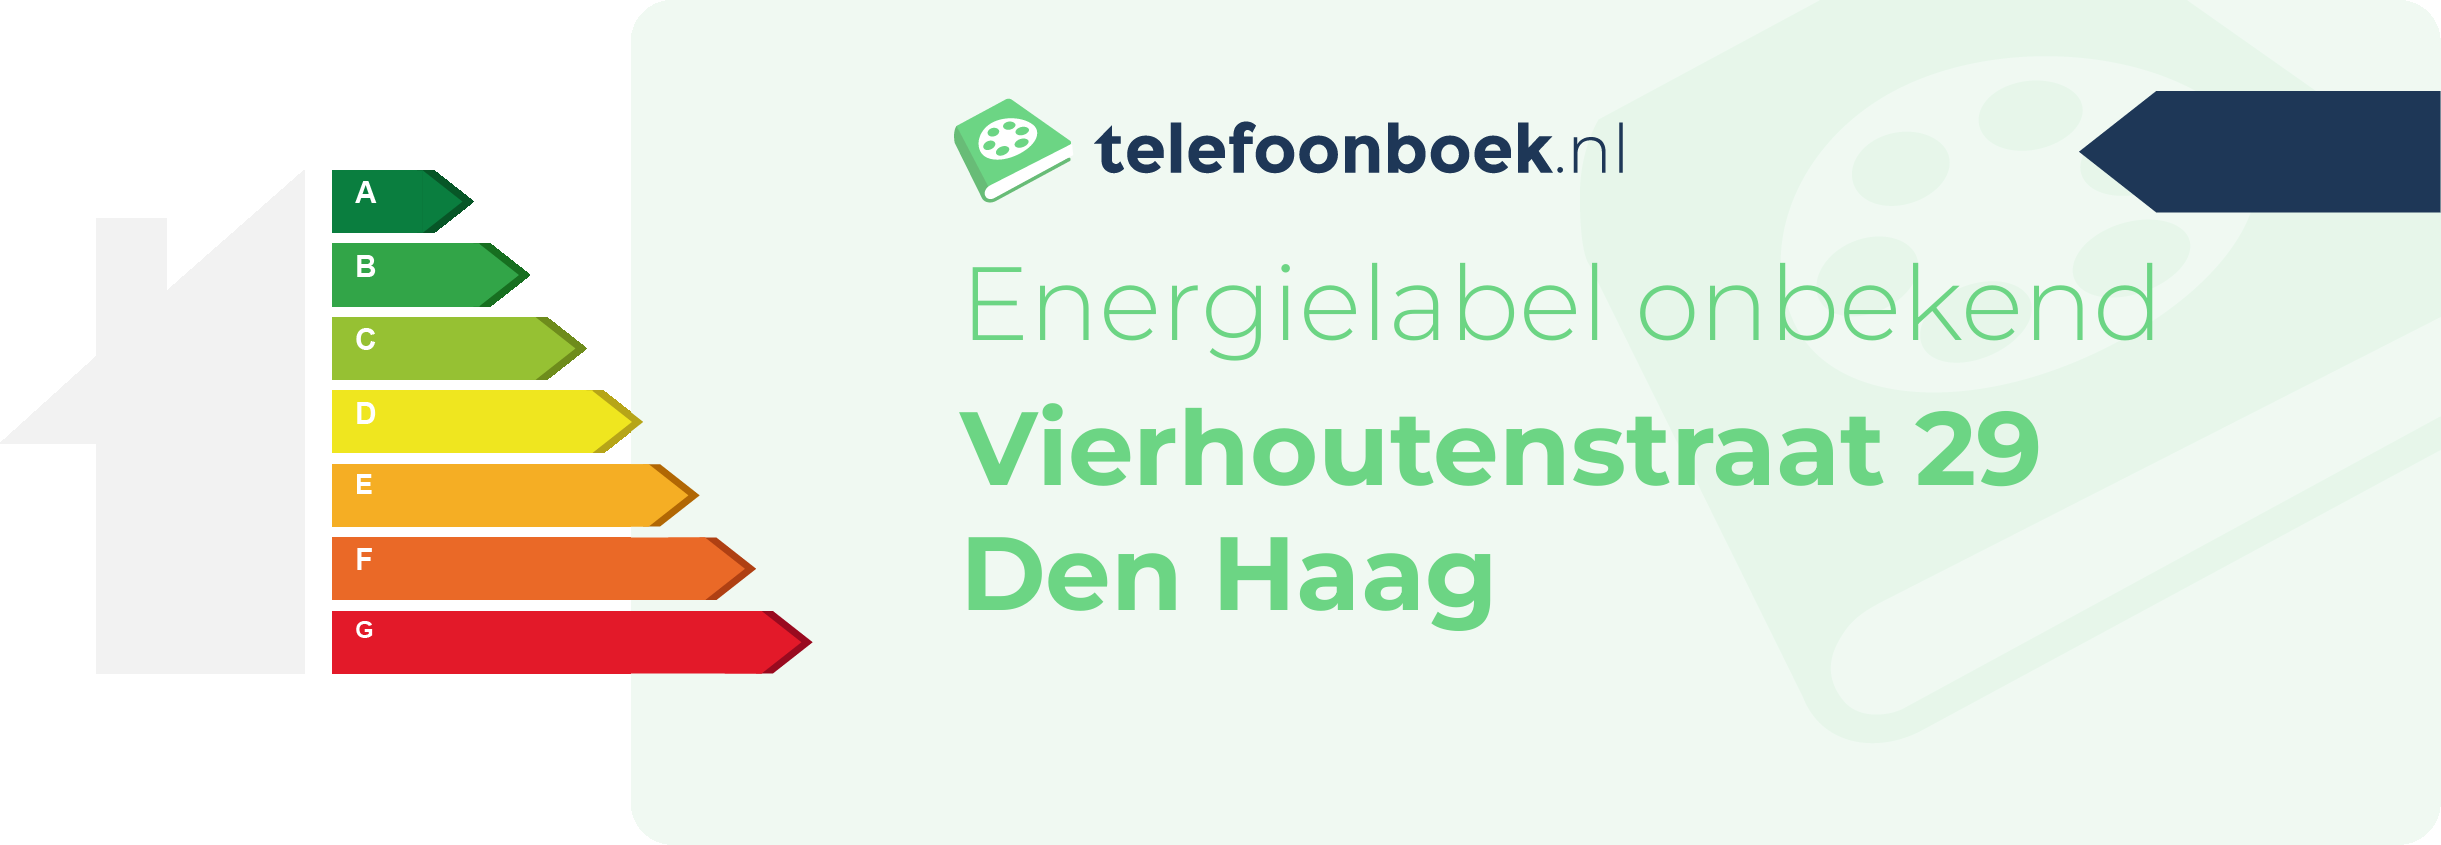 Energielabel Vierhoutenstraat 29 Den Haag